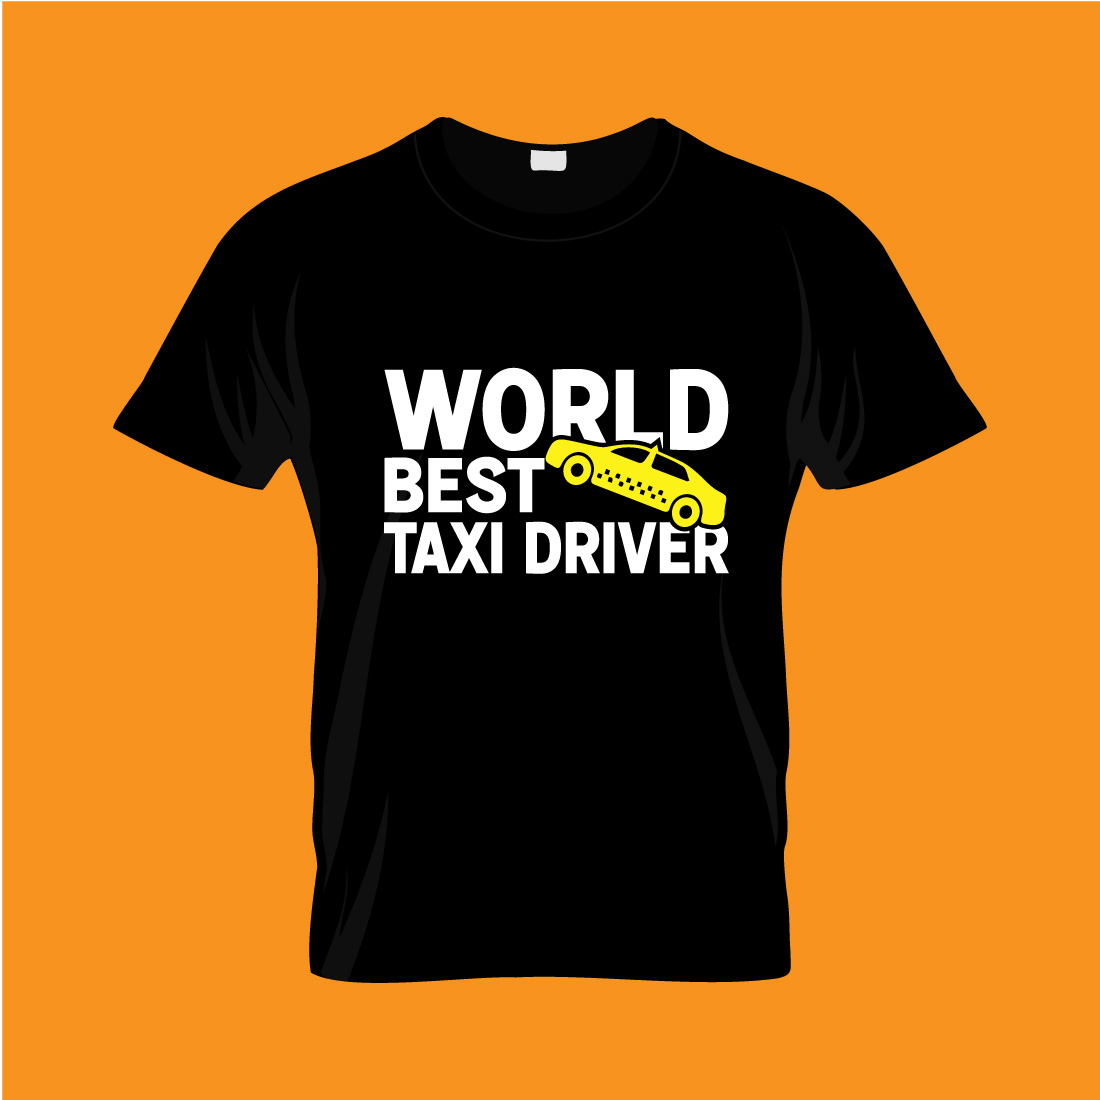 Taxi T- Shirt Design Bundle preview image.